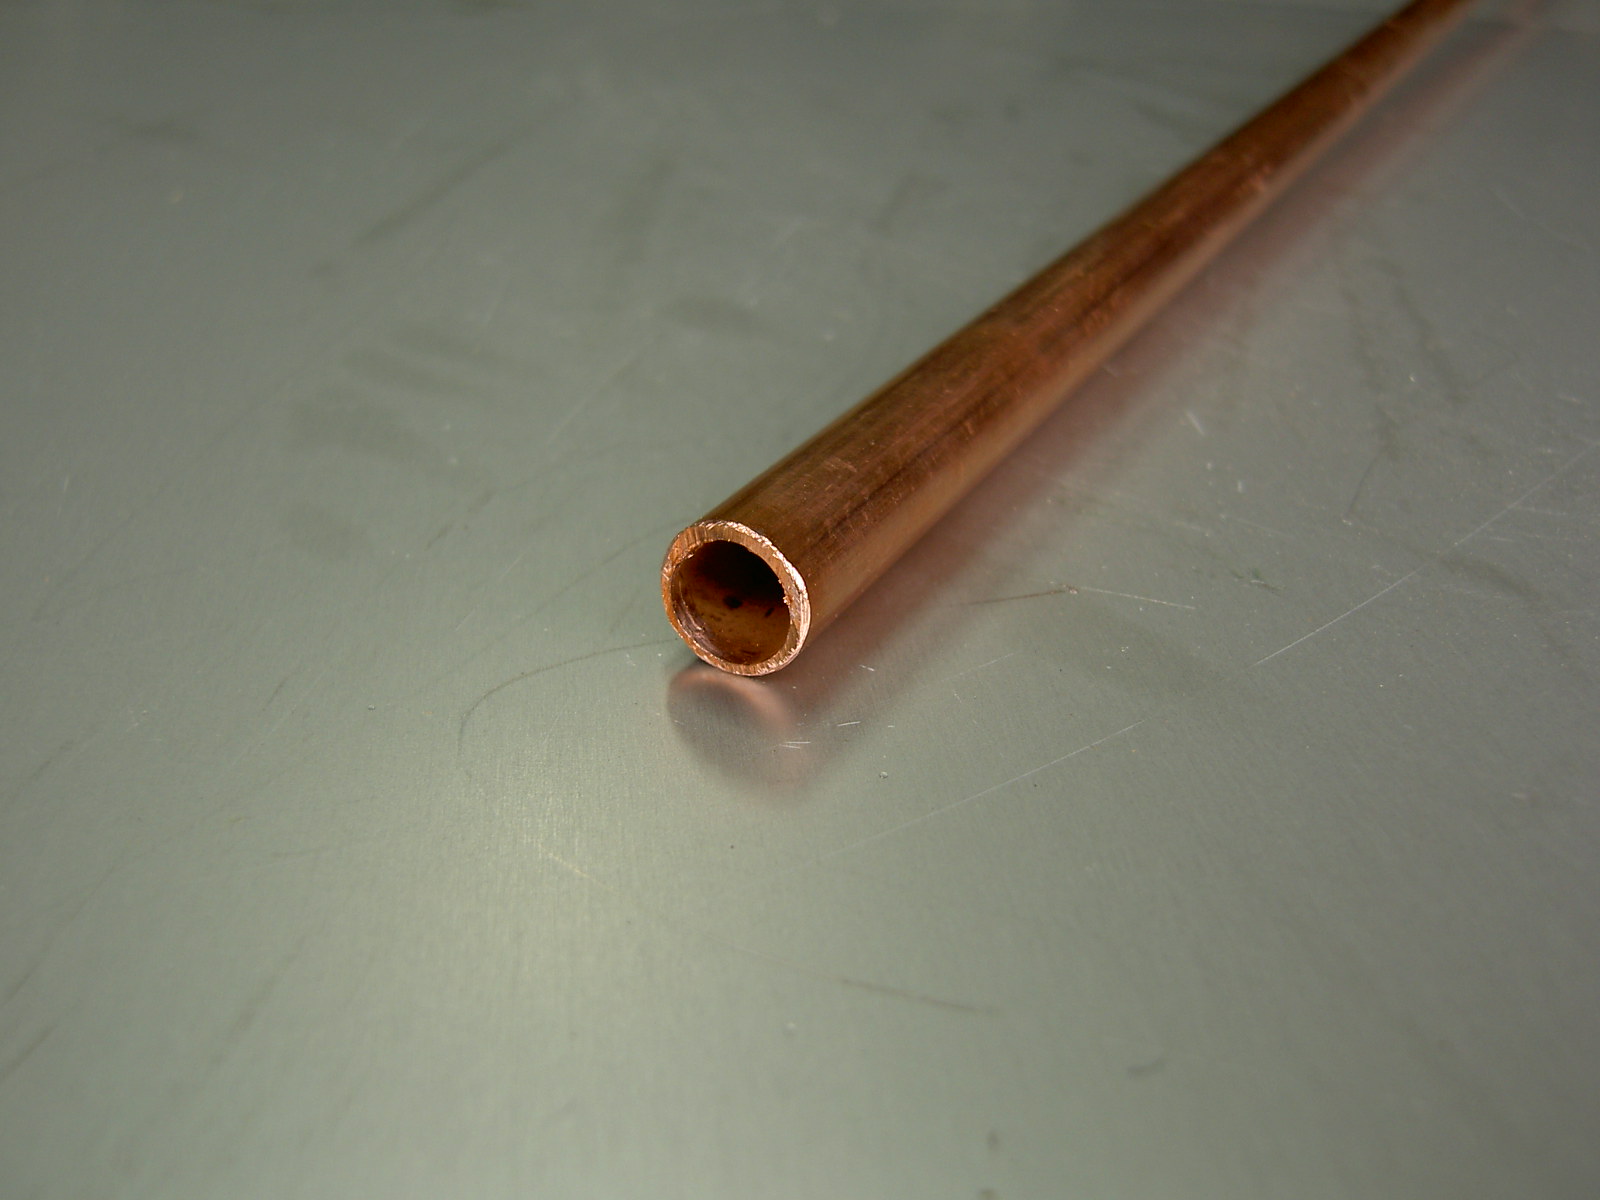 極細純銅管 外径0.3mm, 0.4mm, 0.5mm, 0.6mm, 0.7mm, 0.8mm, 0.9mm, 1.0mm (管径を比較)極細純銅管  外径0.3mm, 0.4mm, 0.5mm, 0.6mm, 0.7mm, 0.8mm, 0.9mm, 1.0m 